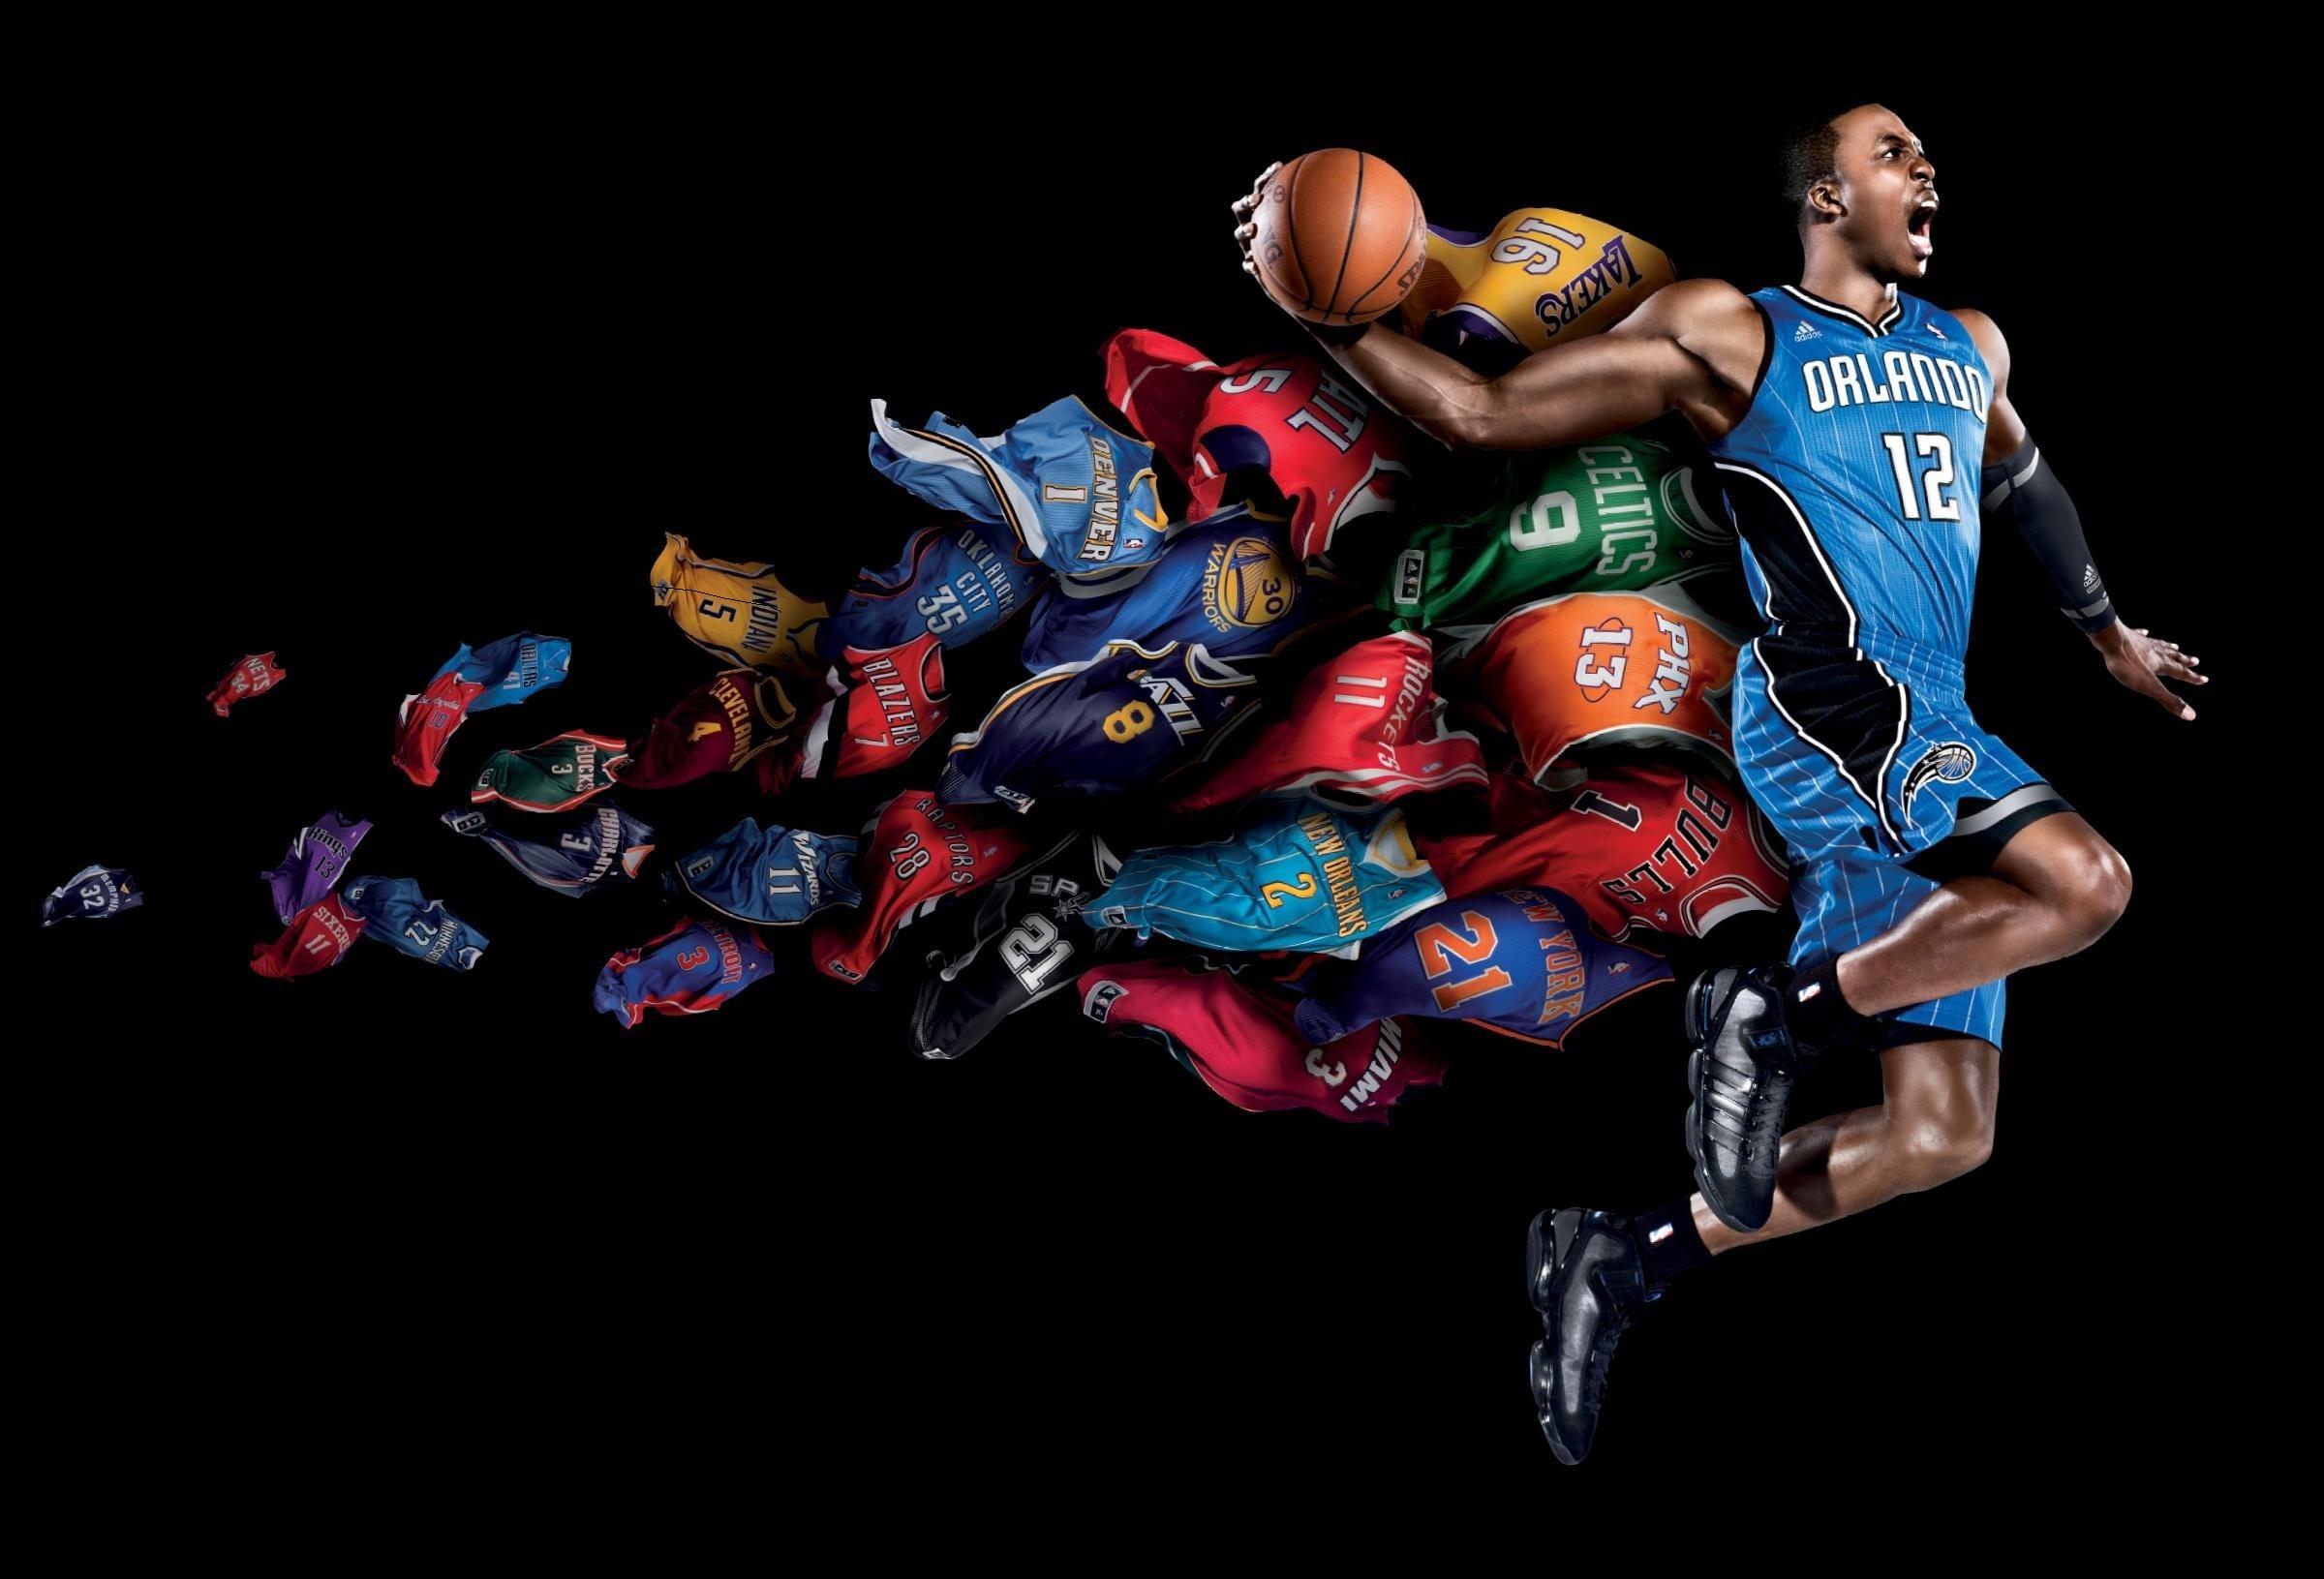 49+] Cool NBA Wallpapers - WallpaperSafari